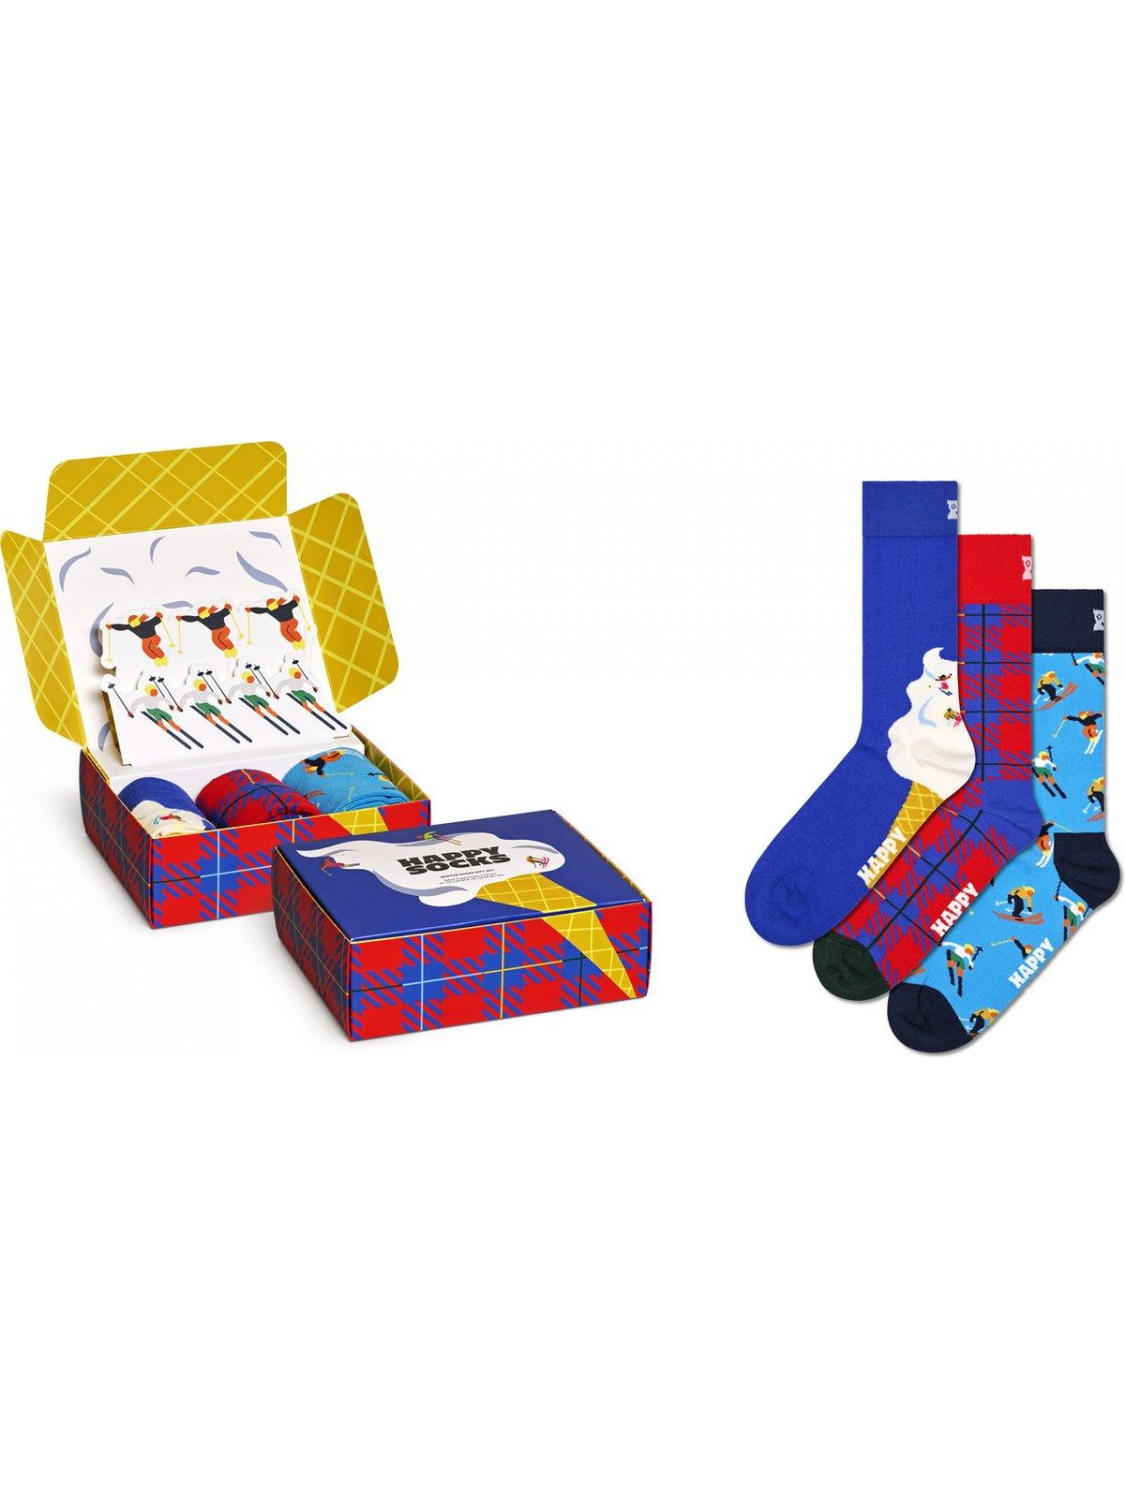 Afbeelding van Happy Socks P000333 3-Pack Downhill Skiing Socks Gift Set